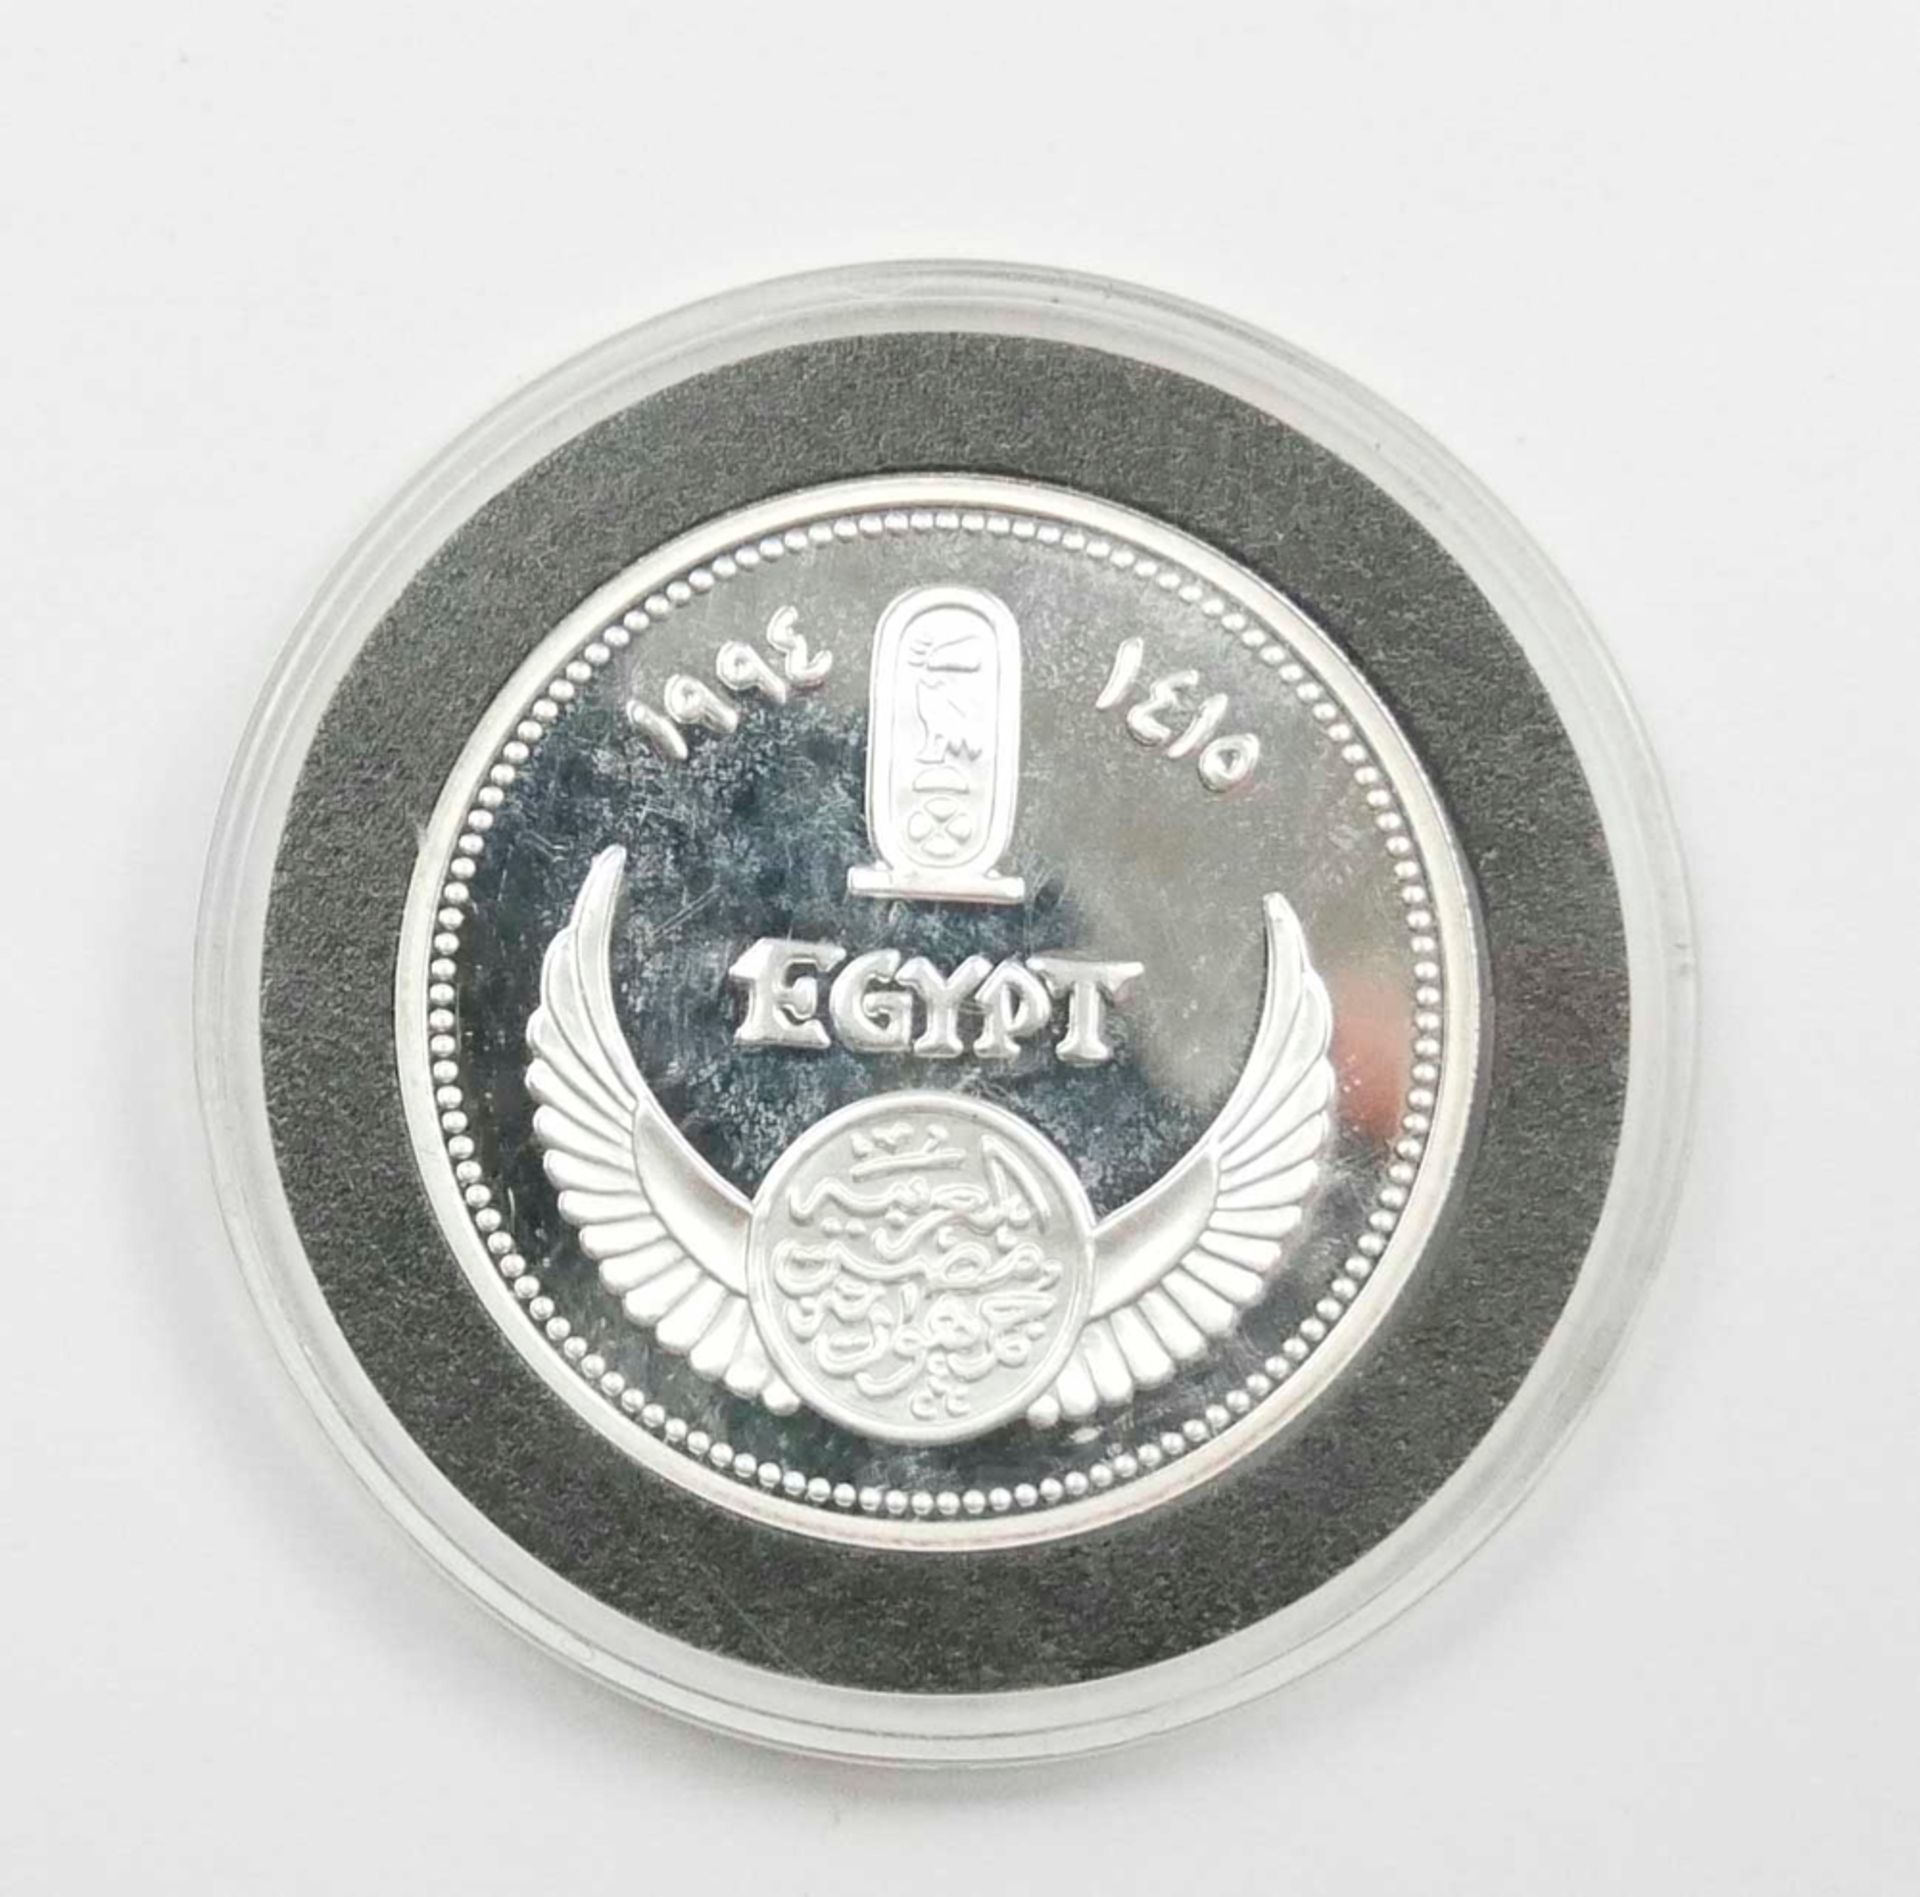 Ägypten 5 Pfund Silbermünze 1993 "Boat of Queen Chnemtamun"